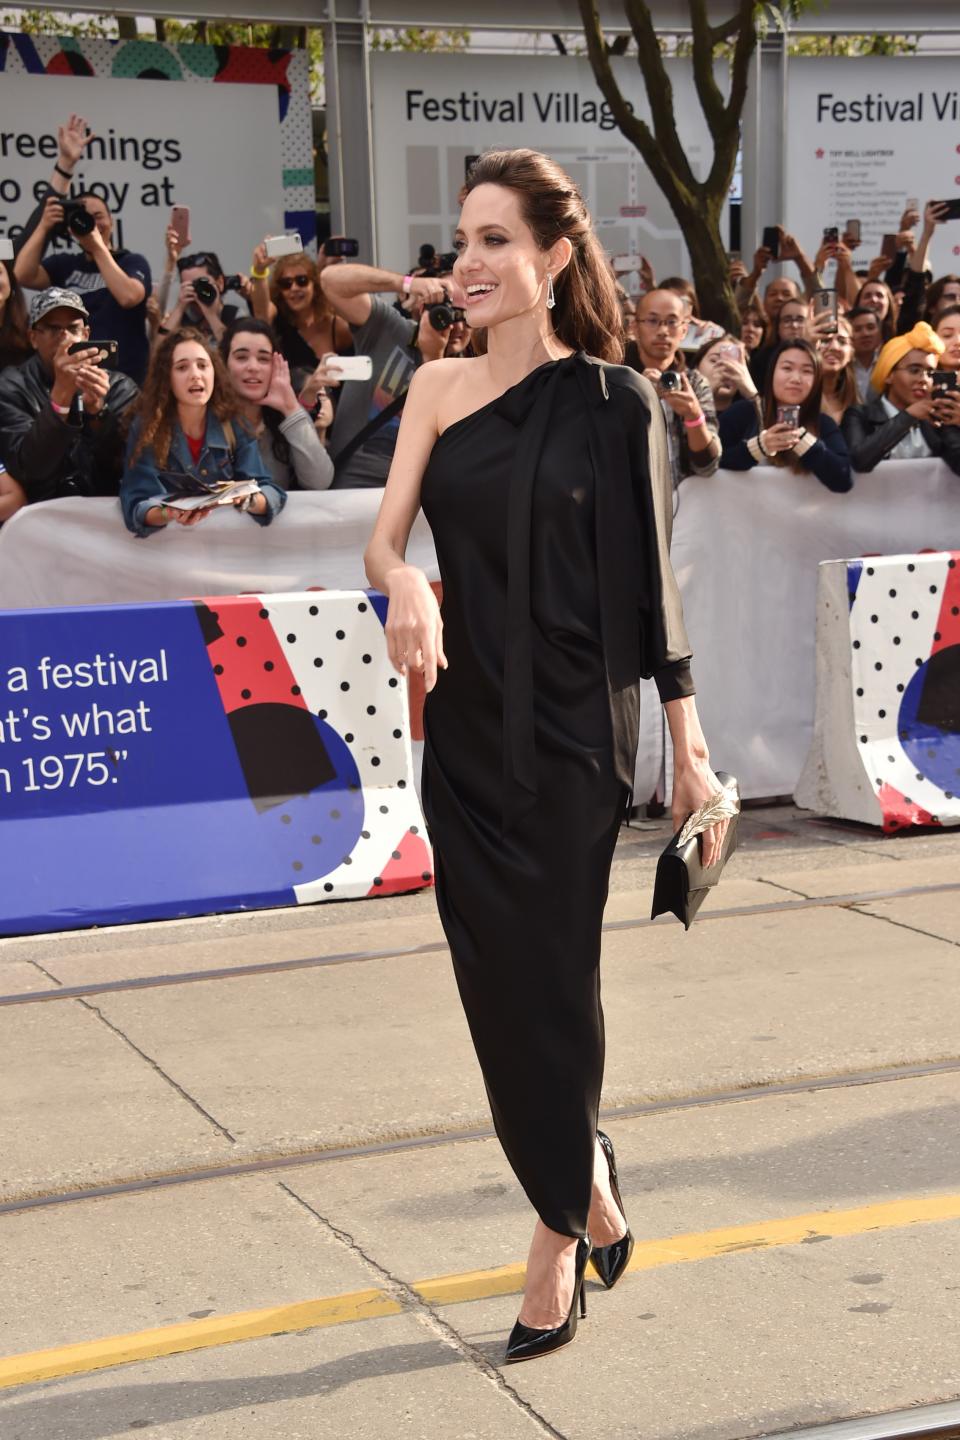 Анджелина Джоли - една от най-красивите, талантливи и състрадателни жени в Холивуд, за втори път даде урок по стил на филмовия фестивал в Торонто., На премиерата на филма си "Първо убиха баща ми" носителката на Оскар се появи в черна асиметрична рокля на Ralph & Russo.